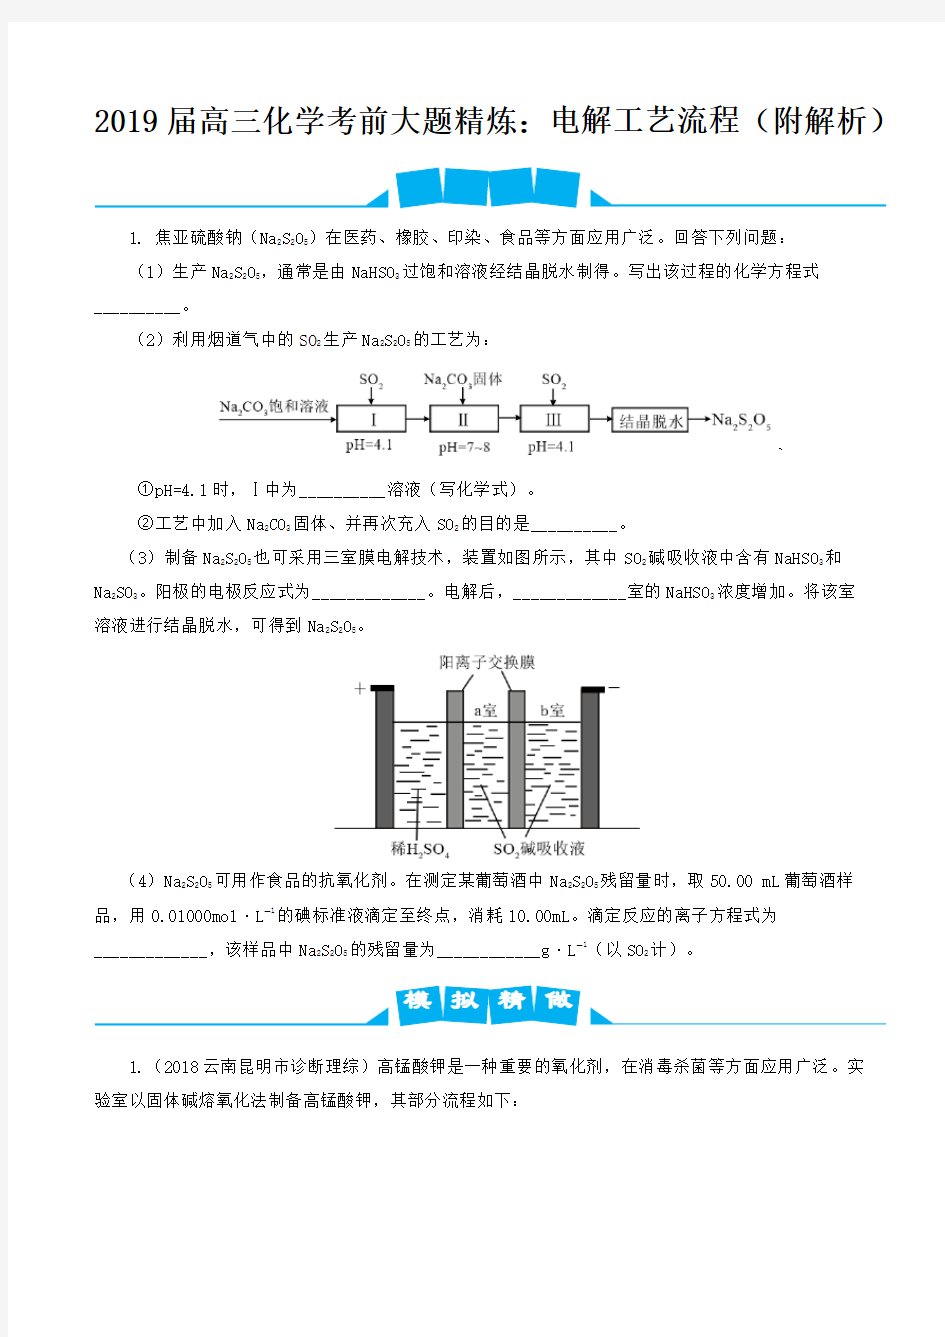 2019届高三化学考前大题精炼：电解工艺流程(附解析)